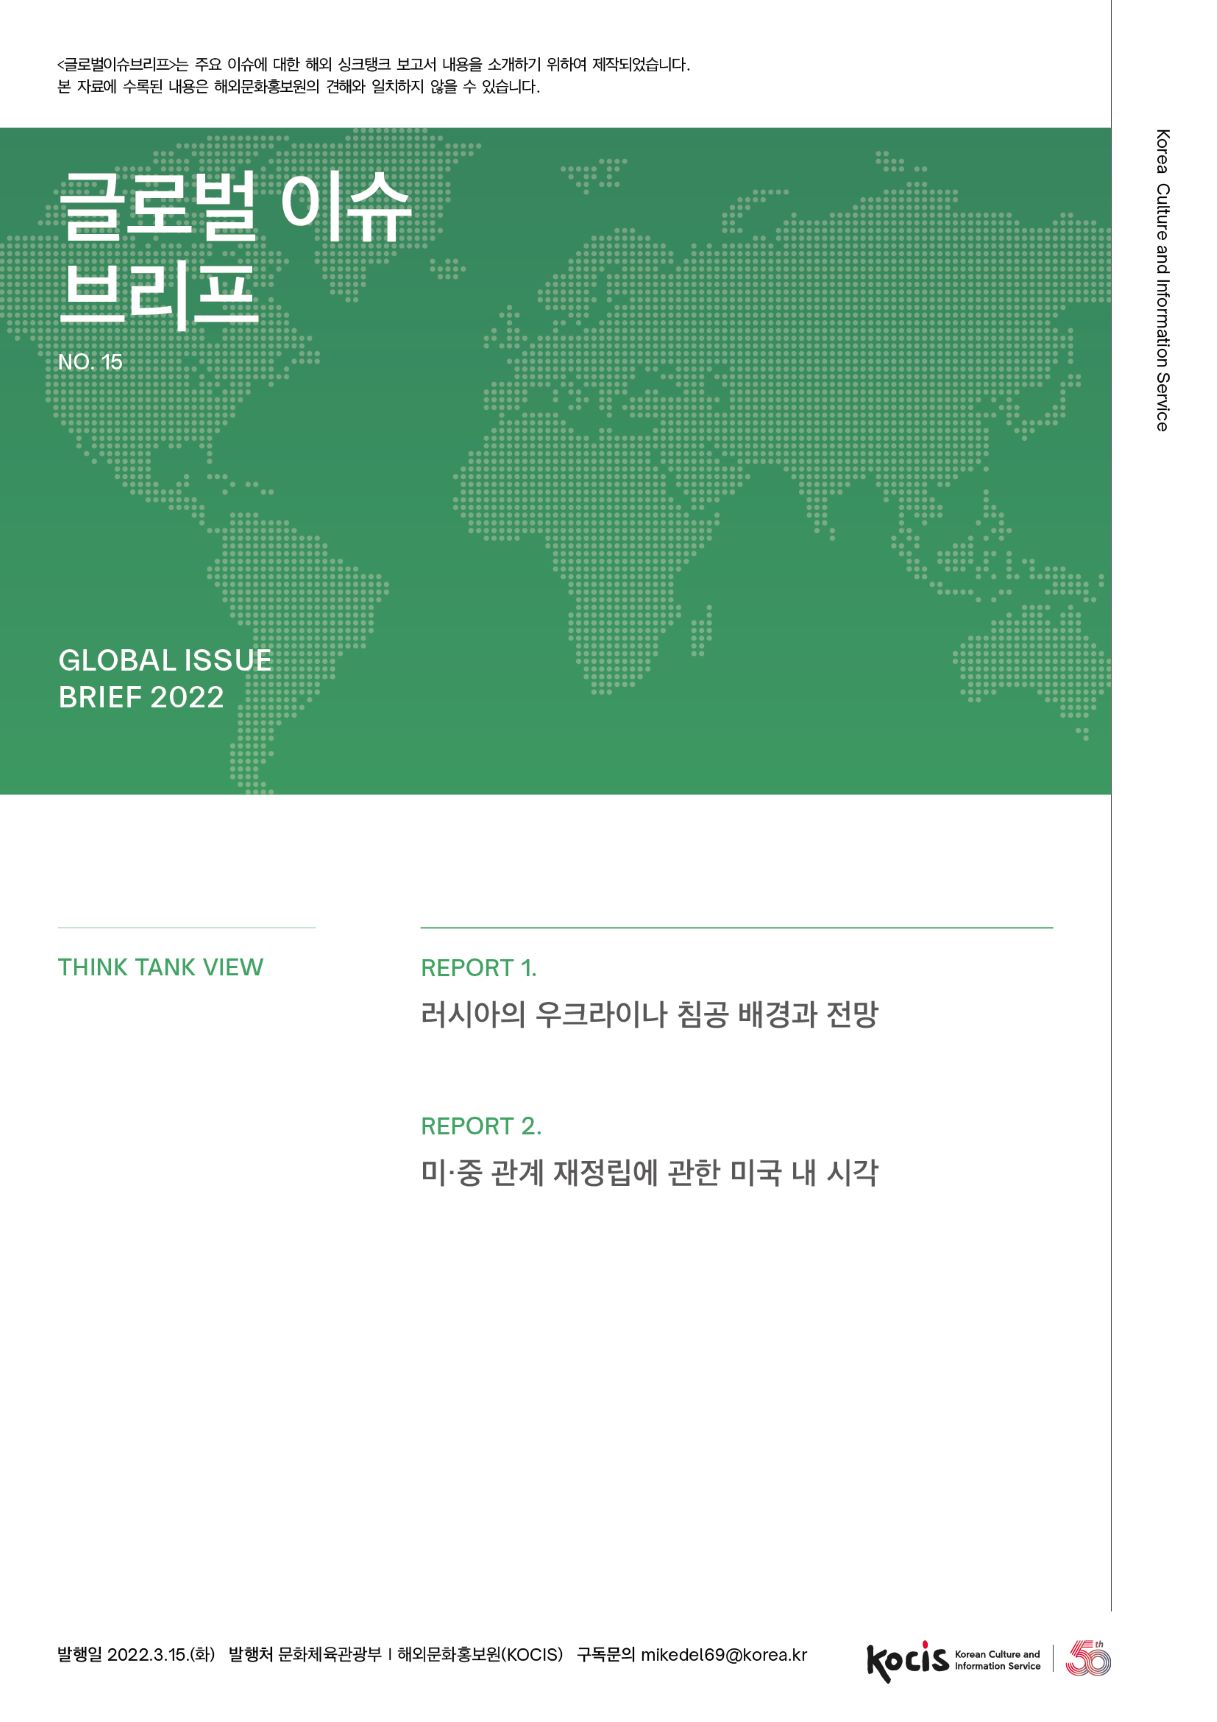 <글로벌이슈브리프는 주요 이슈에 대한 해외 싱크탱크 보고서 내용을 소개하기 위하여 제작되었습니다. 본 자료에 수록된 내용은 해외문화홍보원의 견해와 일치하지 않을 수 있습니다. 글로벌 이슈 | 브리프 Korea Culture and Information Service | NO.15 GLOBAL ISSUE BRIEF 2022 THINK TANK VIEW REPORT 1. 러시아의 우크라이나 침공 배경과 전망 REPORT 2. 미·중 관계 재정립에 관한 미국 내 시각 th 발행일 2022.3.15.(화) 발행처 문화체육관광부 | 해외문화홍보원(KOCIS) 구독문의 mikedel69@korea.kr Korean Culture and Information Service<글로벌이슈브리프는 주요 이슈에 대한 해외 싱크탱크 보고서 내용을 소개하기 위하여 제작되었습니다. 본 자료에 수록된 내용은 해외문화홍보원의 견해와 일치하지 않을 수 있습니다. 글로벌 이슈 | 브리프 Korea Culture and Information Service | NO.15 GLOBAL ISSUE BRIEF 2022 THINK TANK VIEW REPORT 1. 러시아의 우크라이나 침공 배경과 전망 REPORT 2. 미·중 관계 재정립에 관한 미국 내 시각 th 발행일 2022.3.15.(화) 발행처 문화체육관광부 | 해외문화홍보원(KOCIS) 구독문의 mikedel69@korea.kr Korean Culture and Information Service